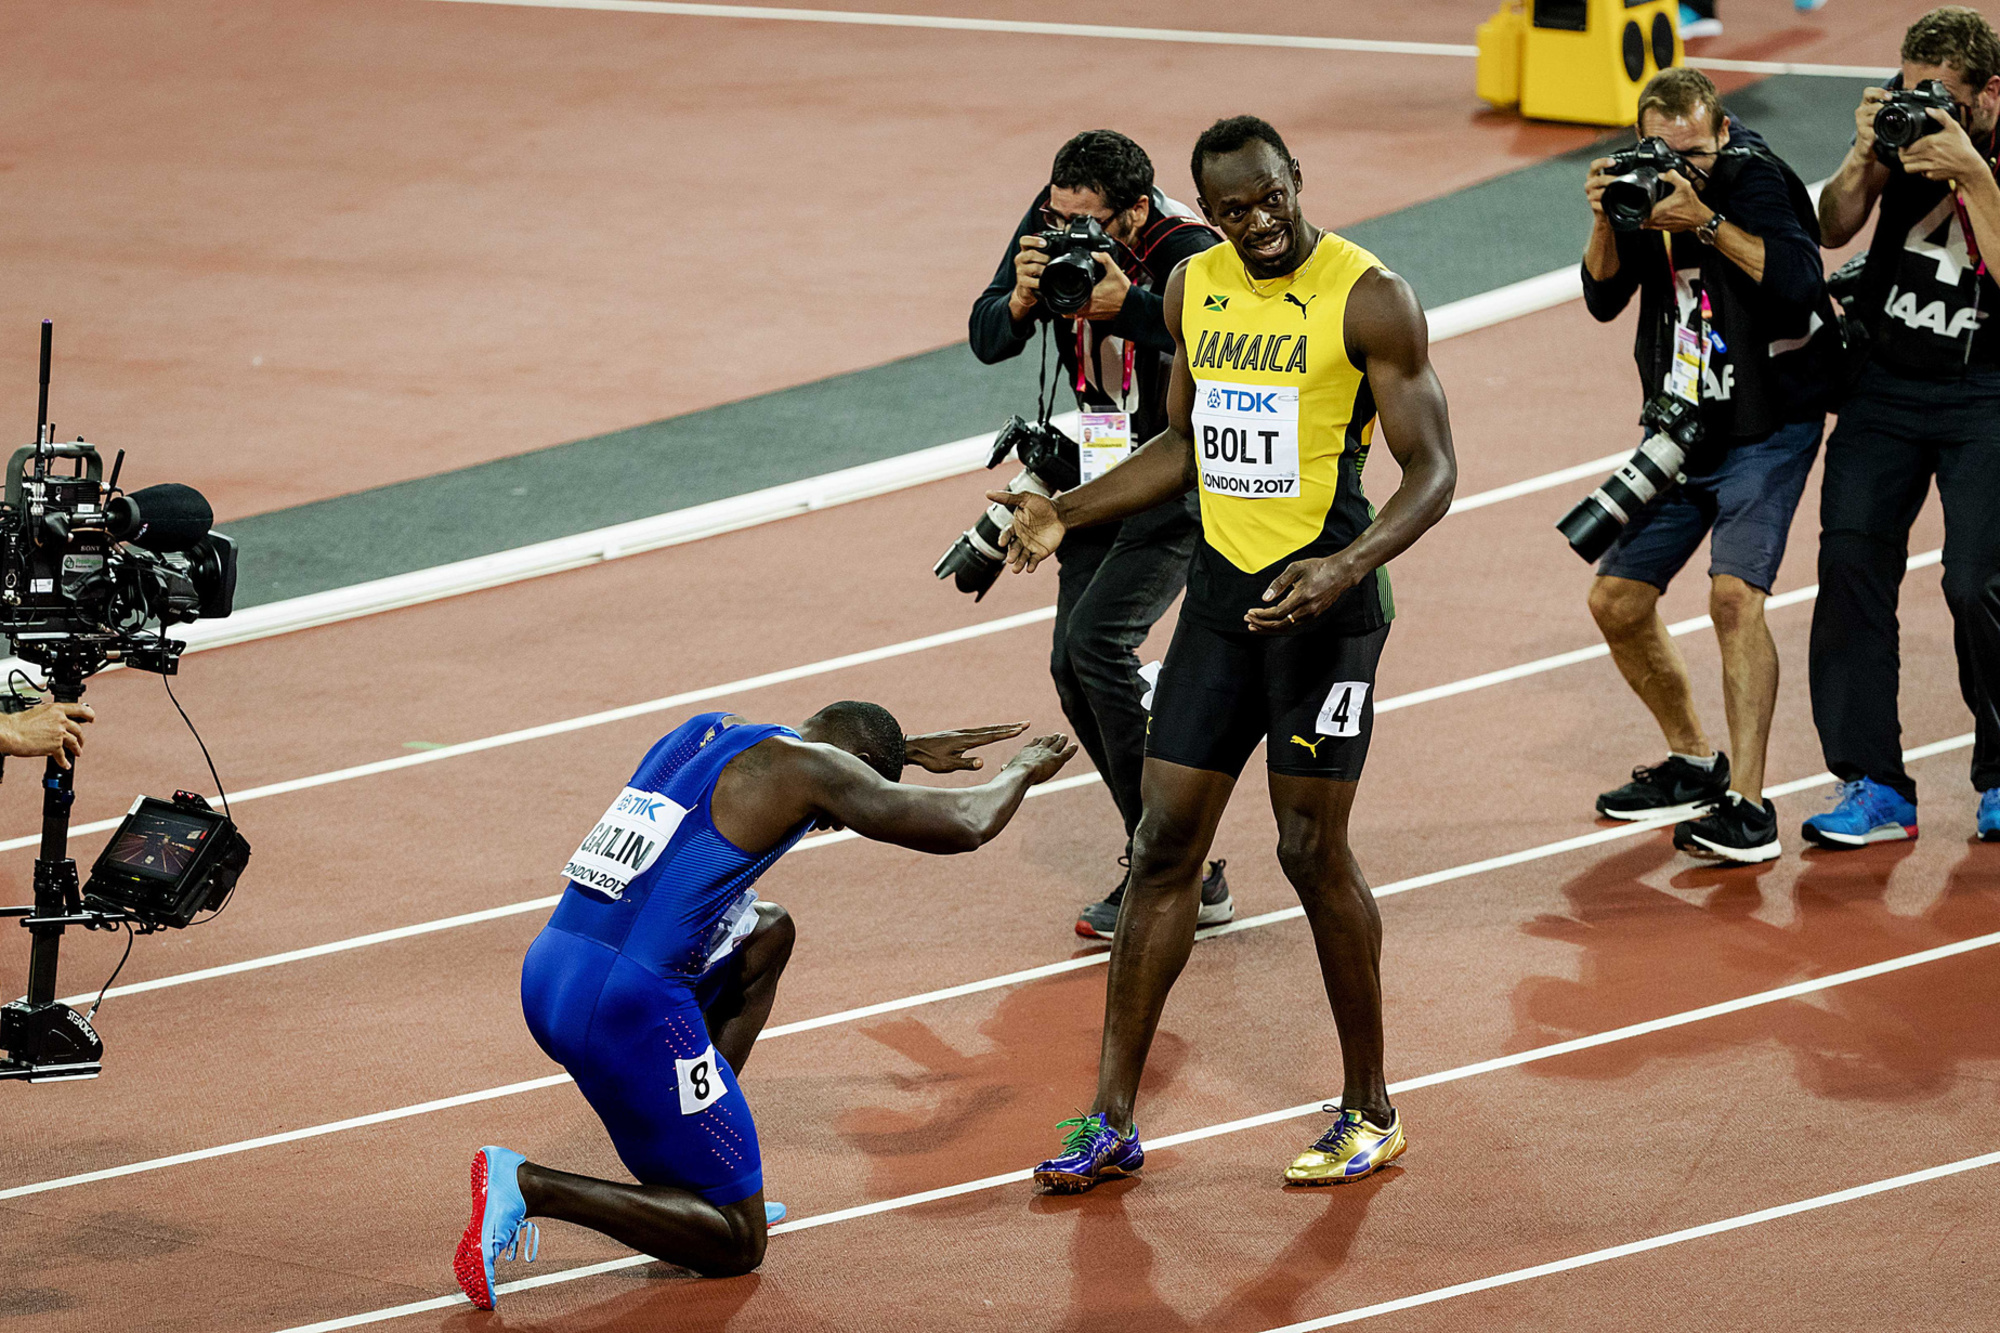 Après une suspension pour dopage, c'est surtout Usain Bolt qui s'est dressé sur la route aux titres de Justin Gatlin. Ici, aux JO de Londres, l'Américain n'hésite pas à se prosterner devant son rival jamaïcain après une nouvelle défaite., belga